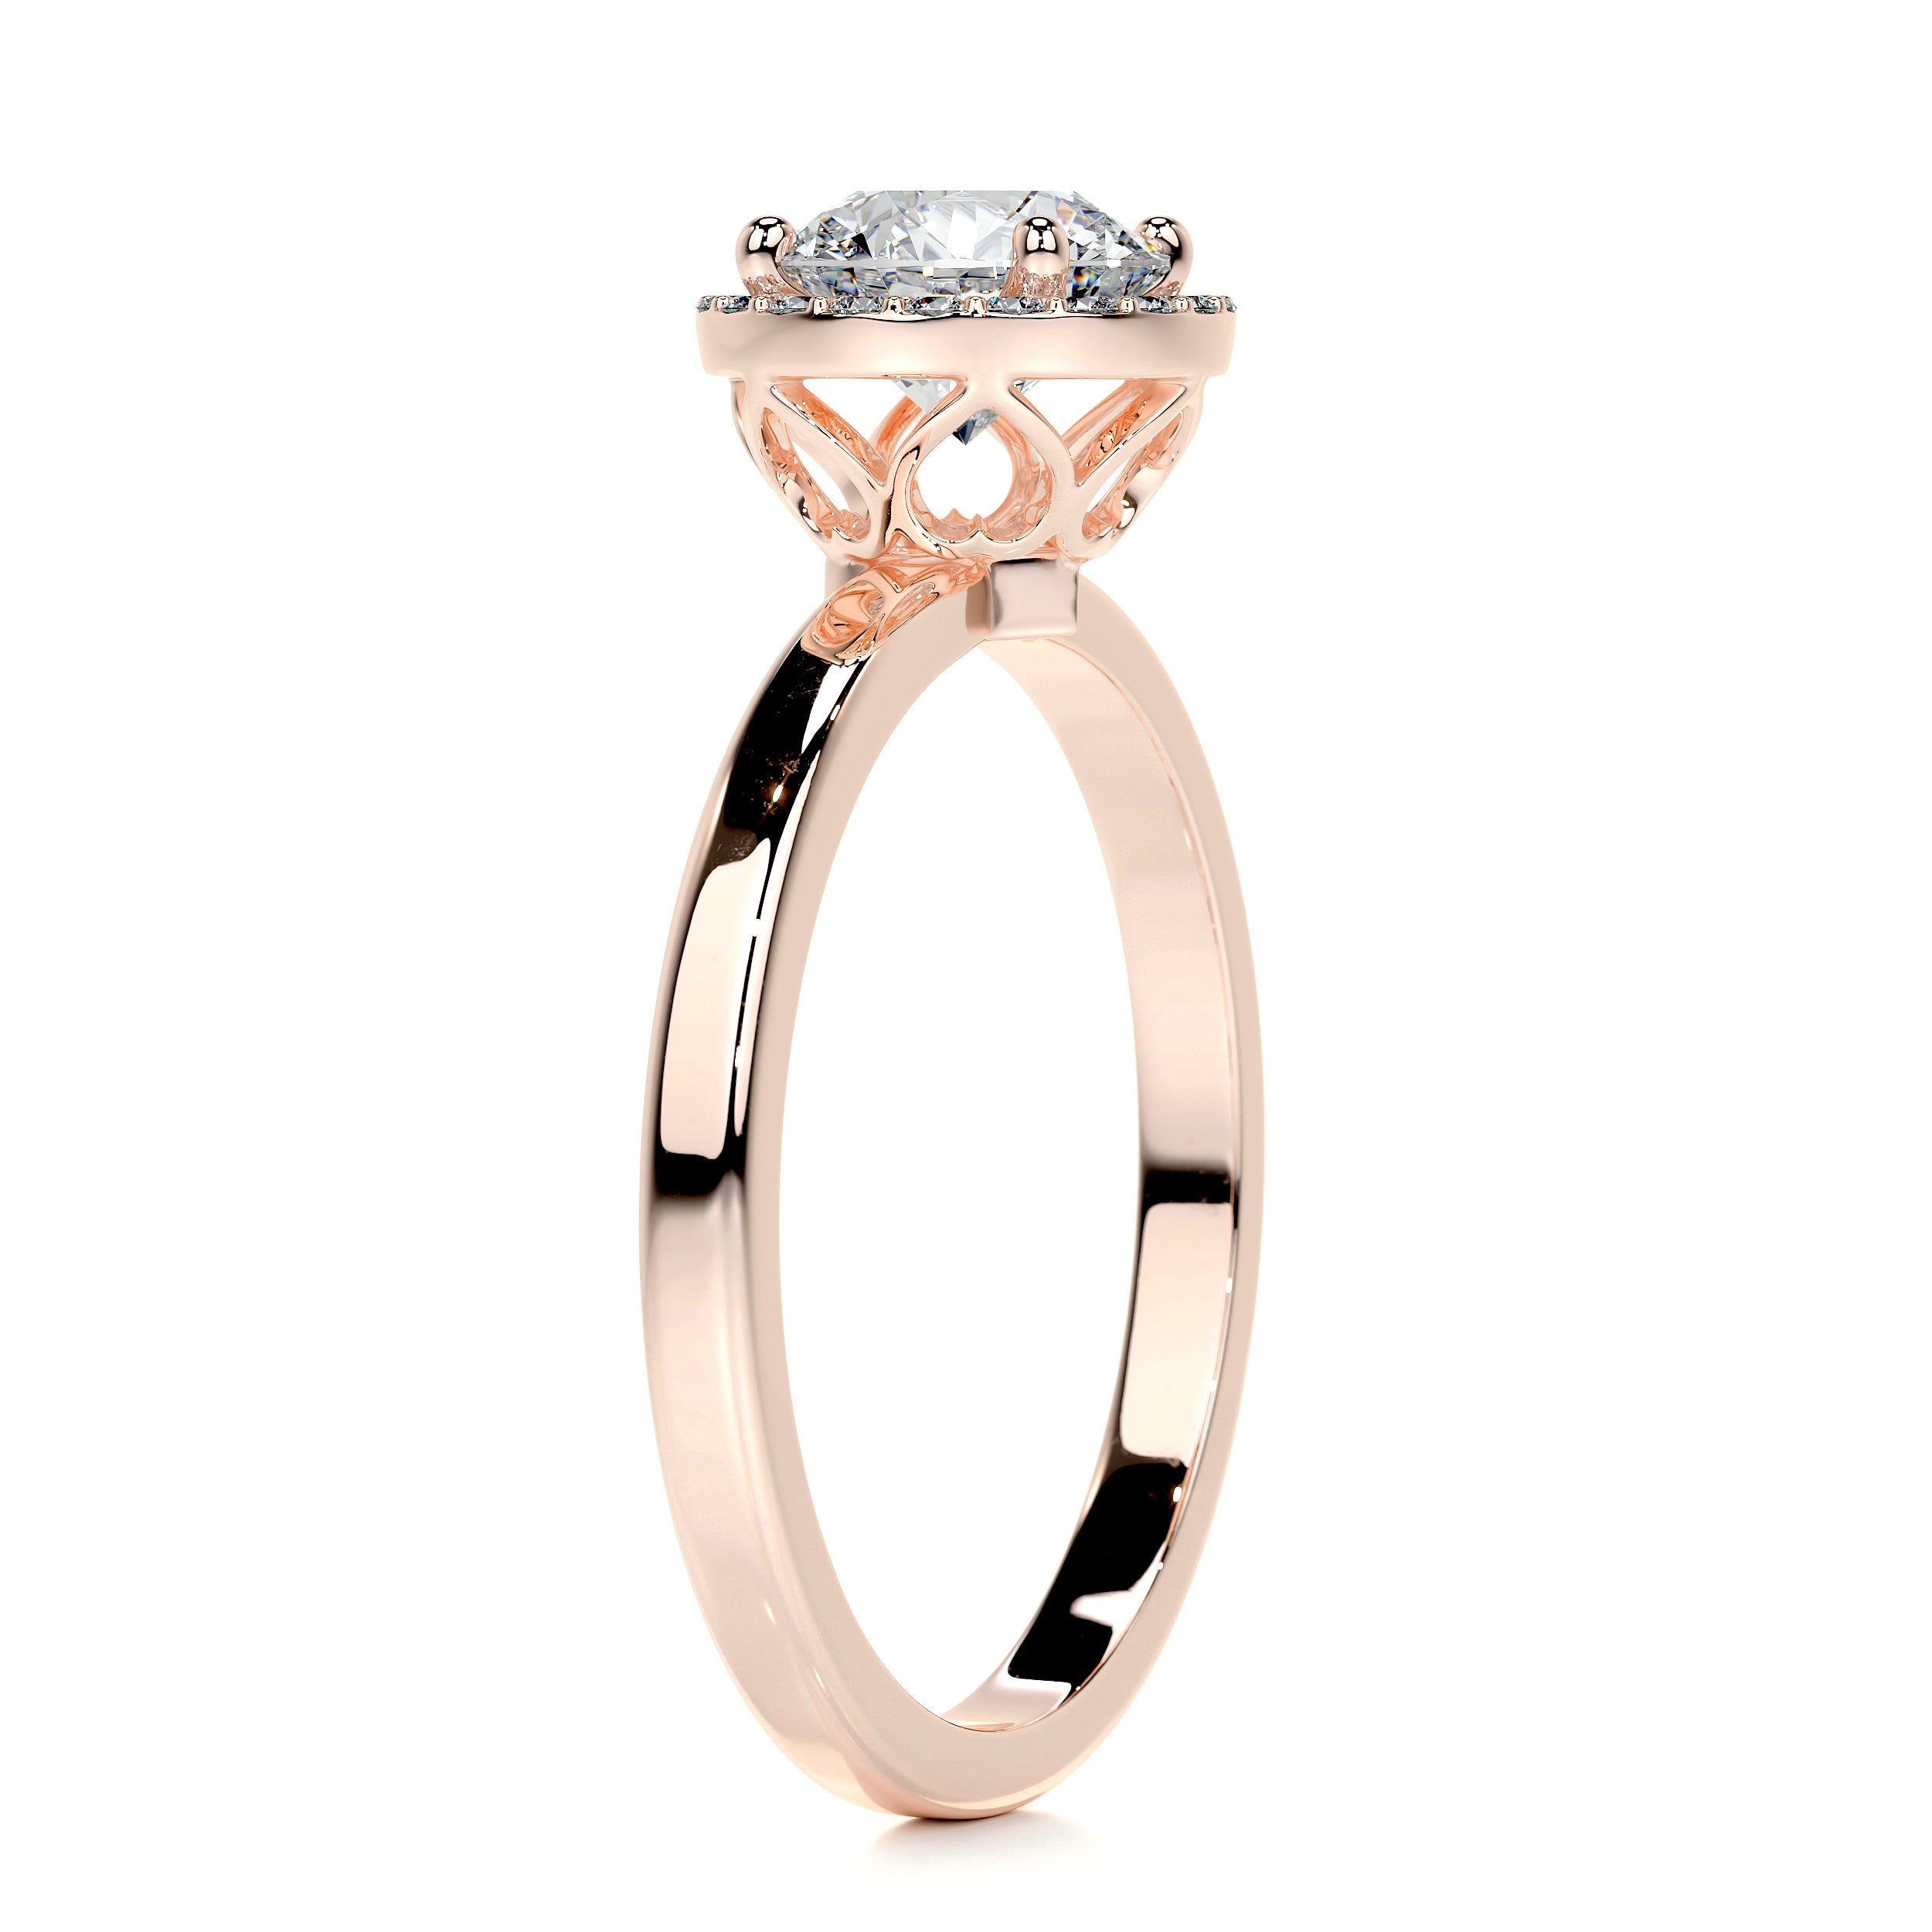 Anne Moissanite & Diamonds Ring   (1.10 Carat) -14K Rose Gold